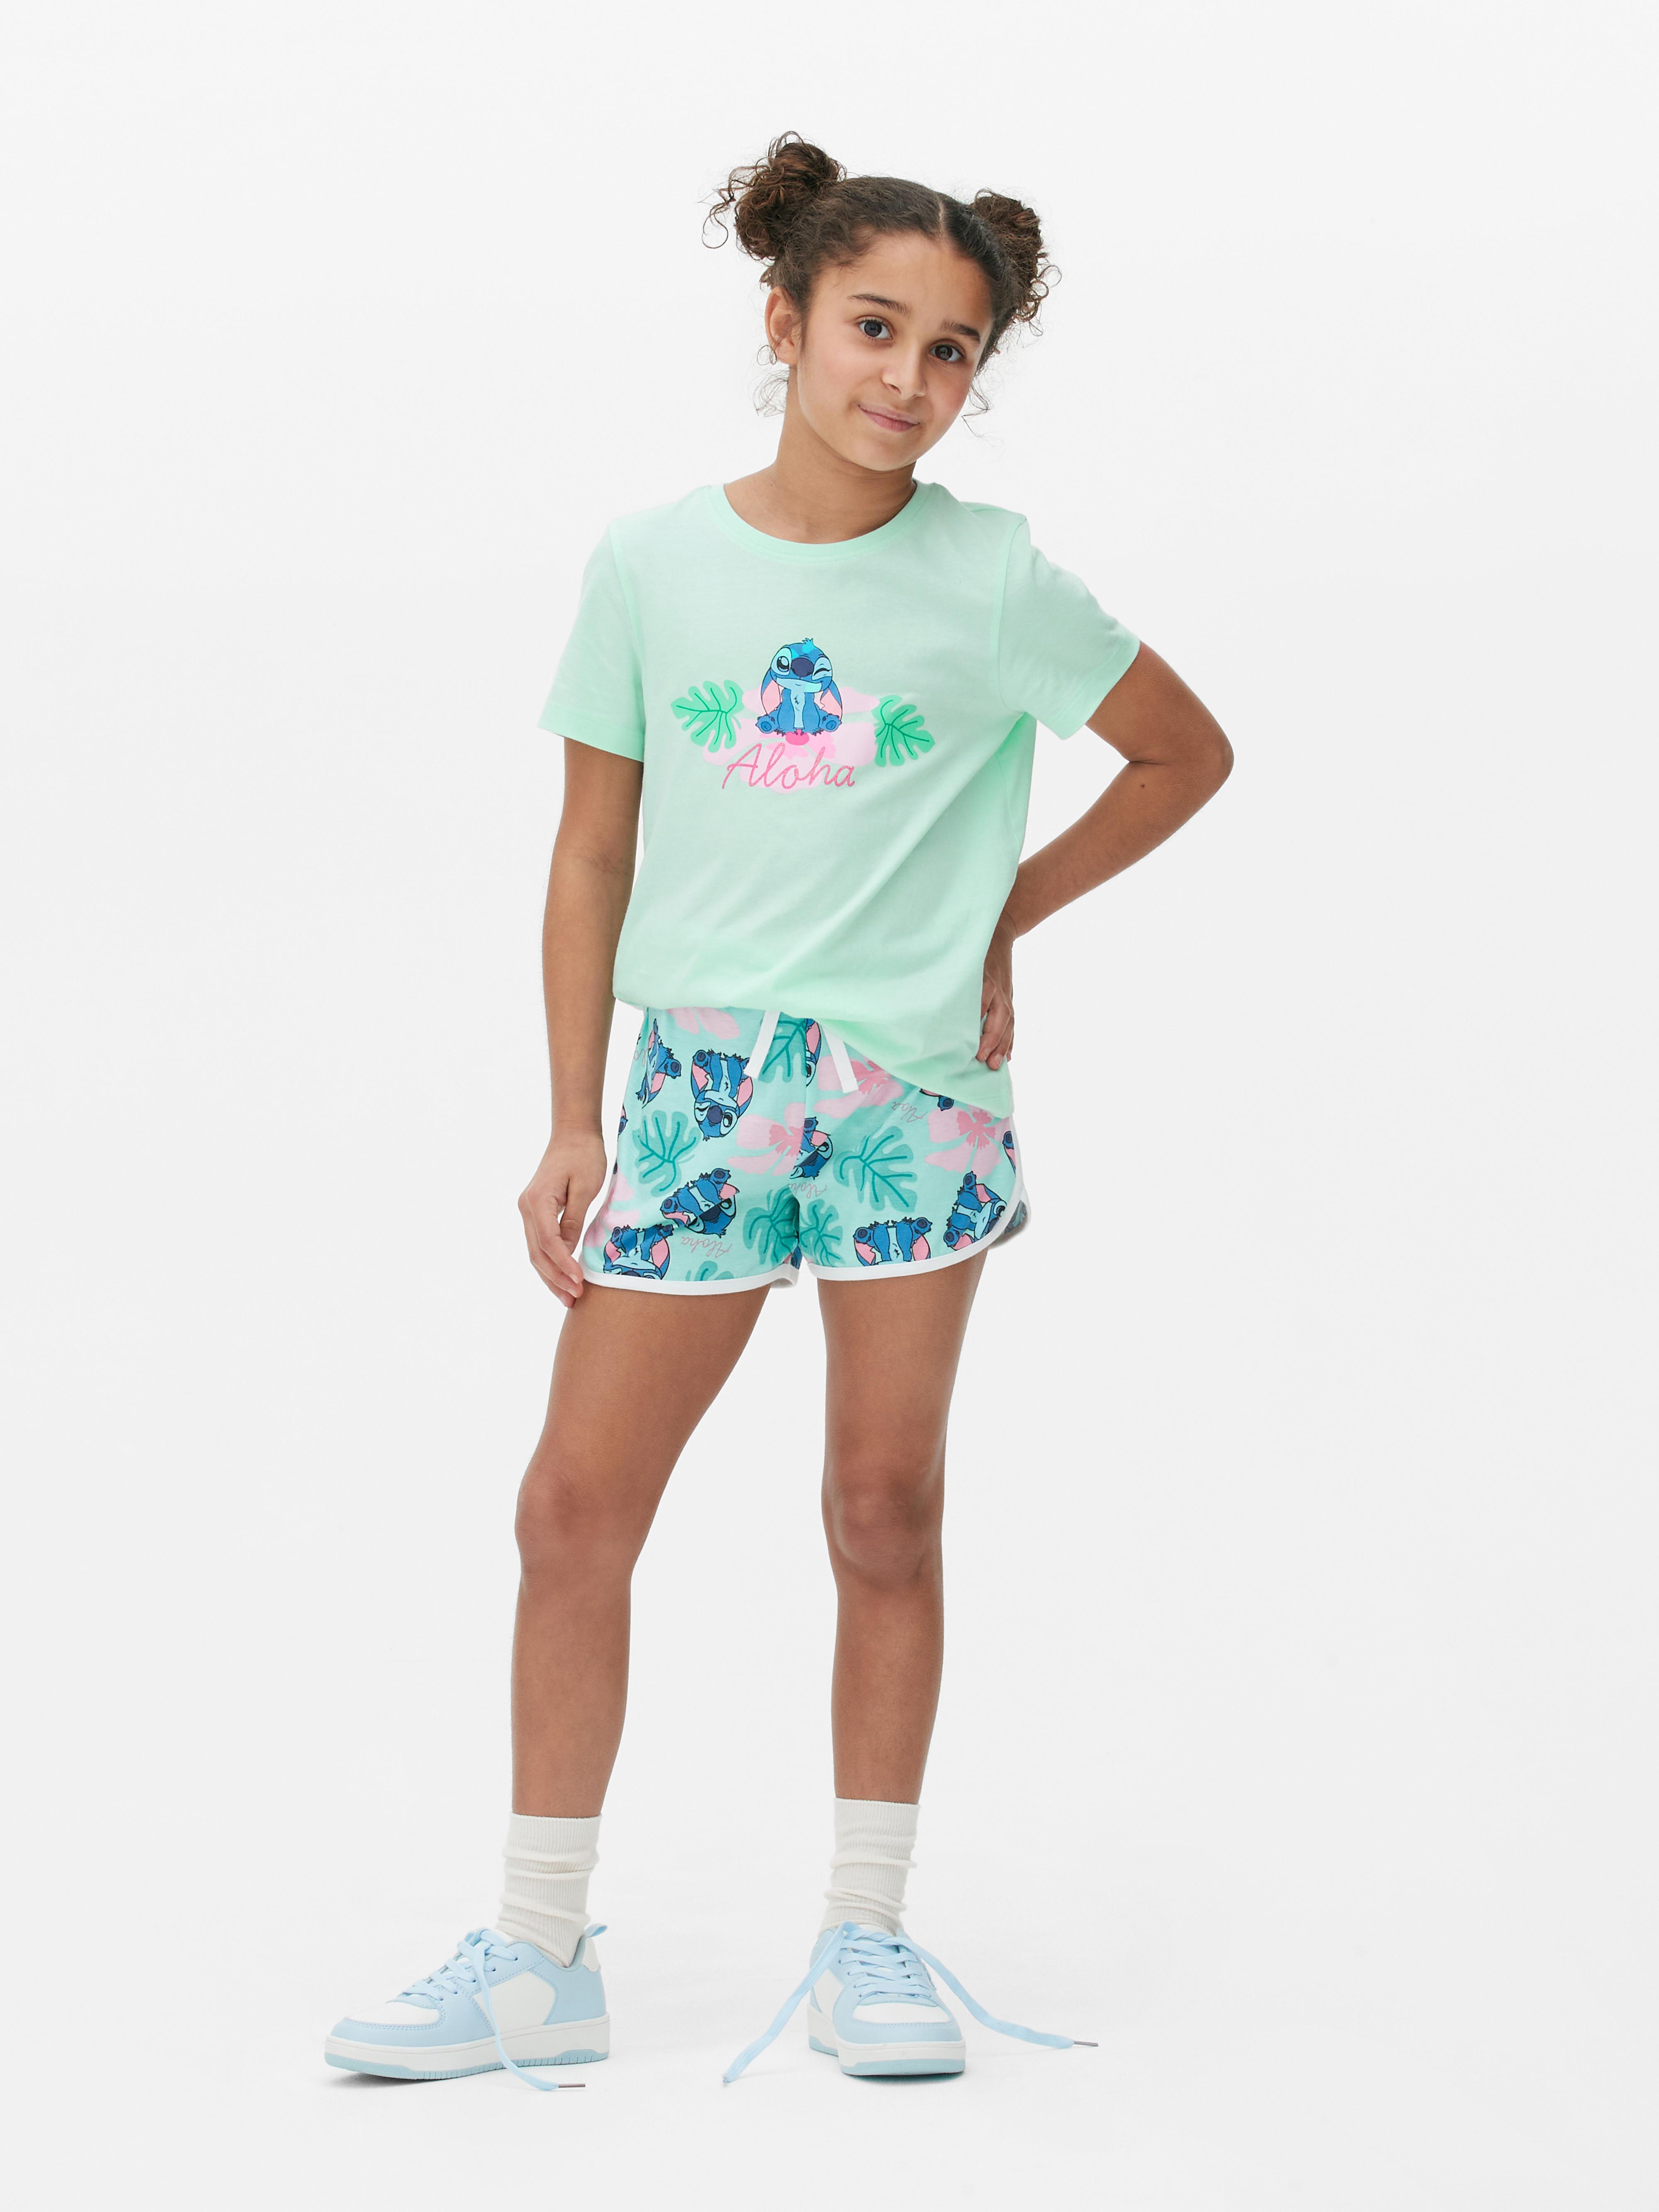 Pantalones cortos de Lilo y Stitch de Disney